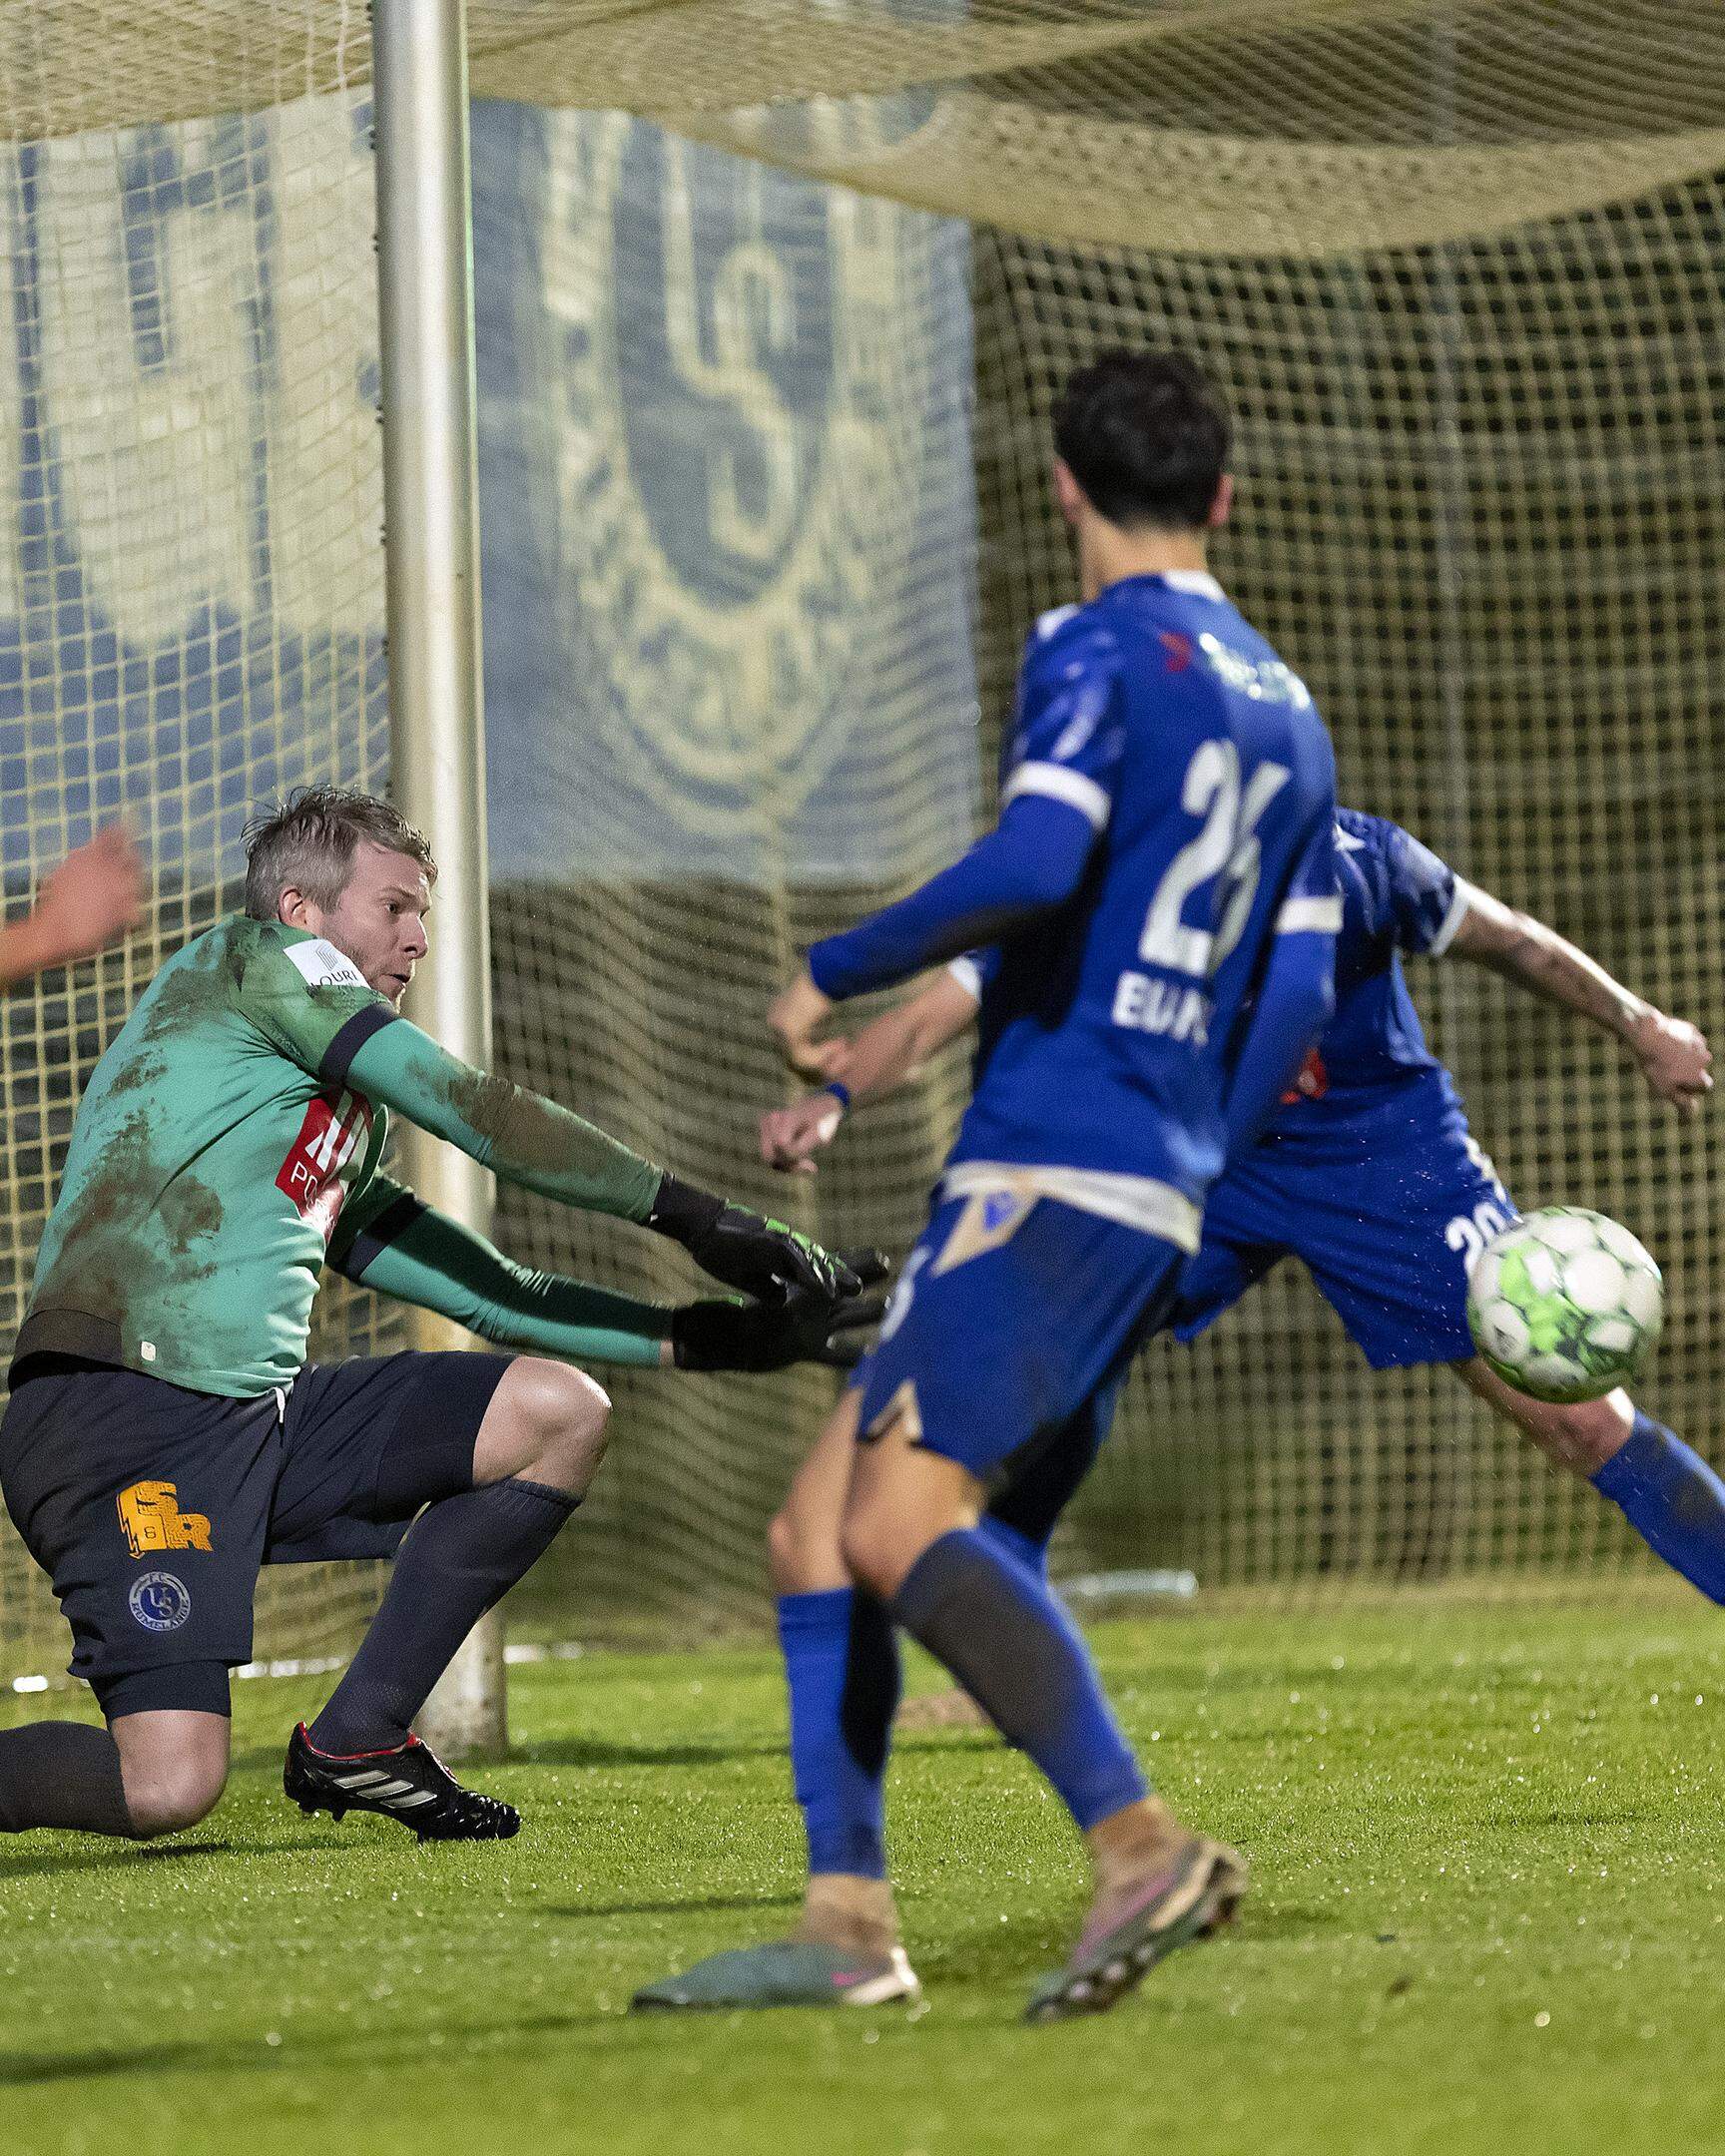 Nach der ansprechenden Leistung von Yan Heil beim Pokal-Aus gegen Jeunesse, hofft der Torhüter nun in der Relegation gegen den nächsten Escher Verein auf einen besseren Ausgang.